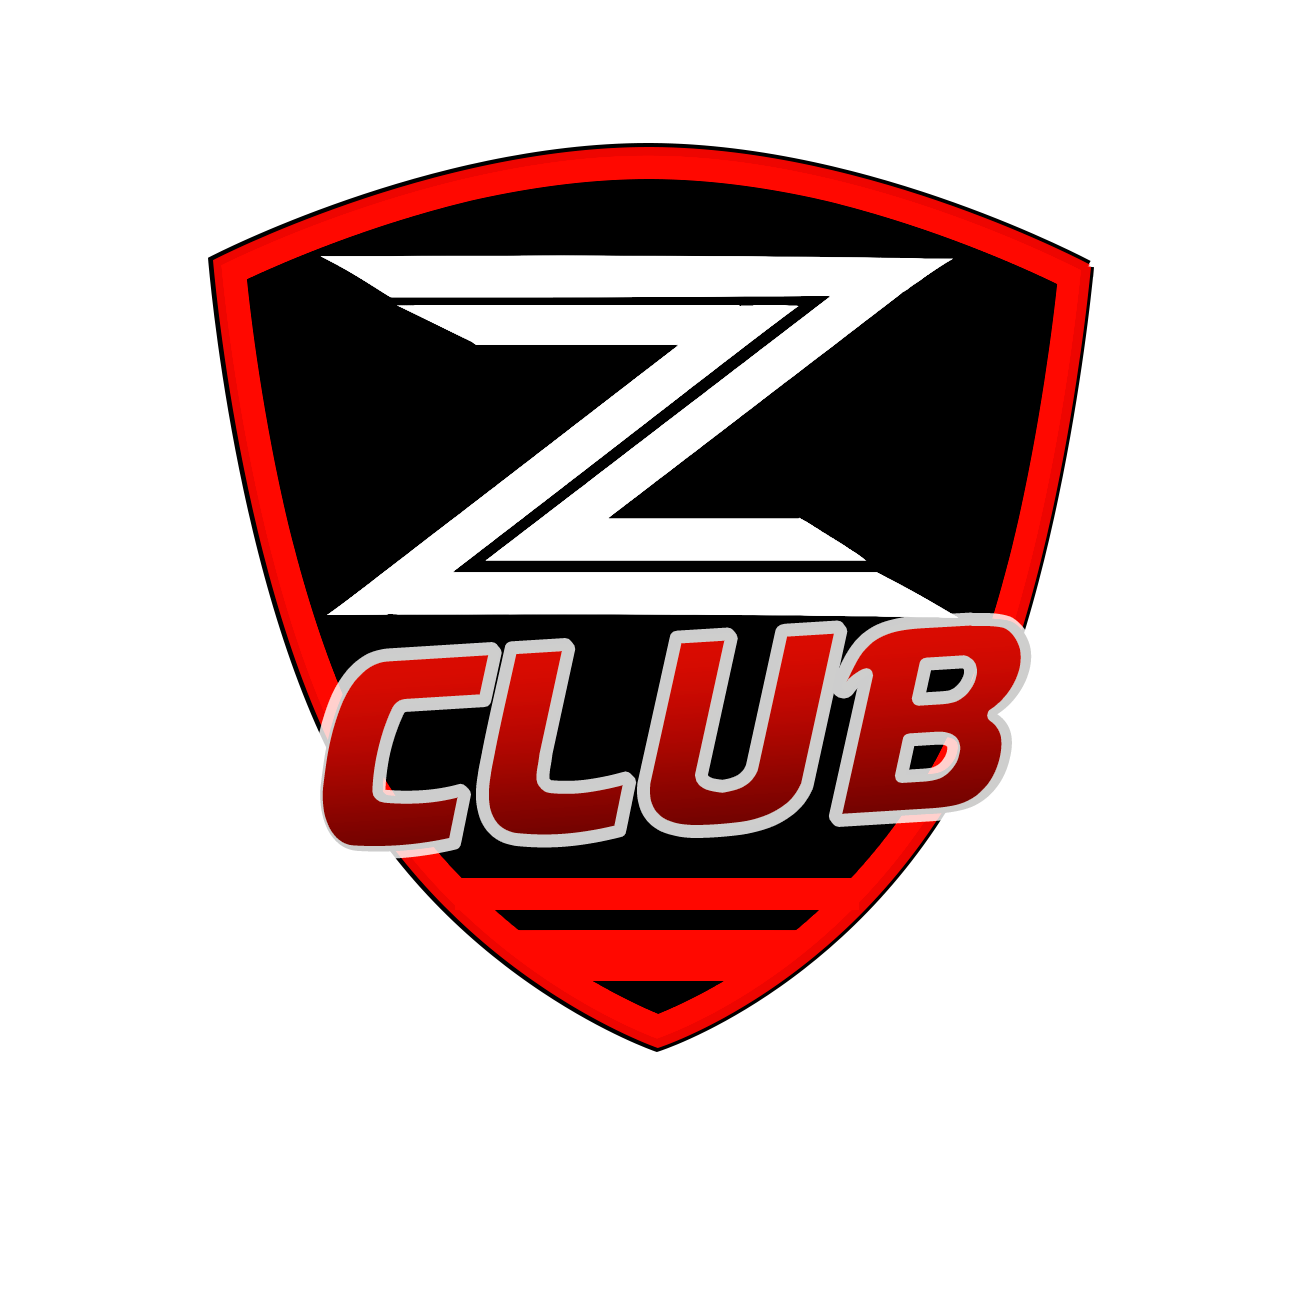 Servicios para los socios de Zclub.es